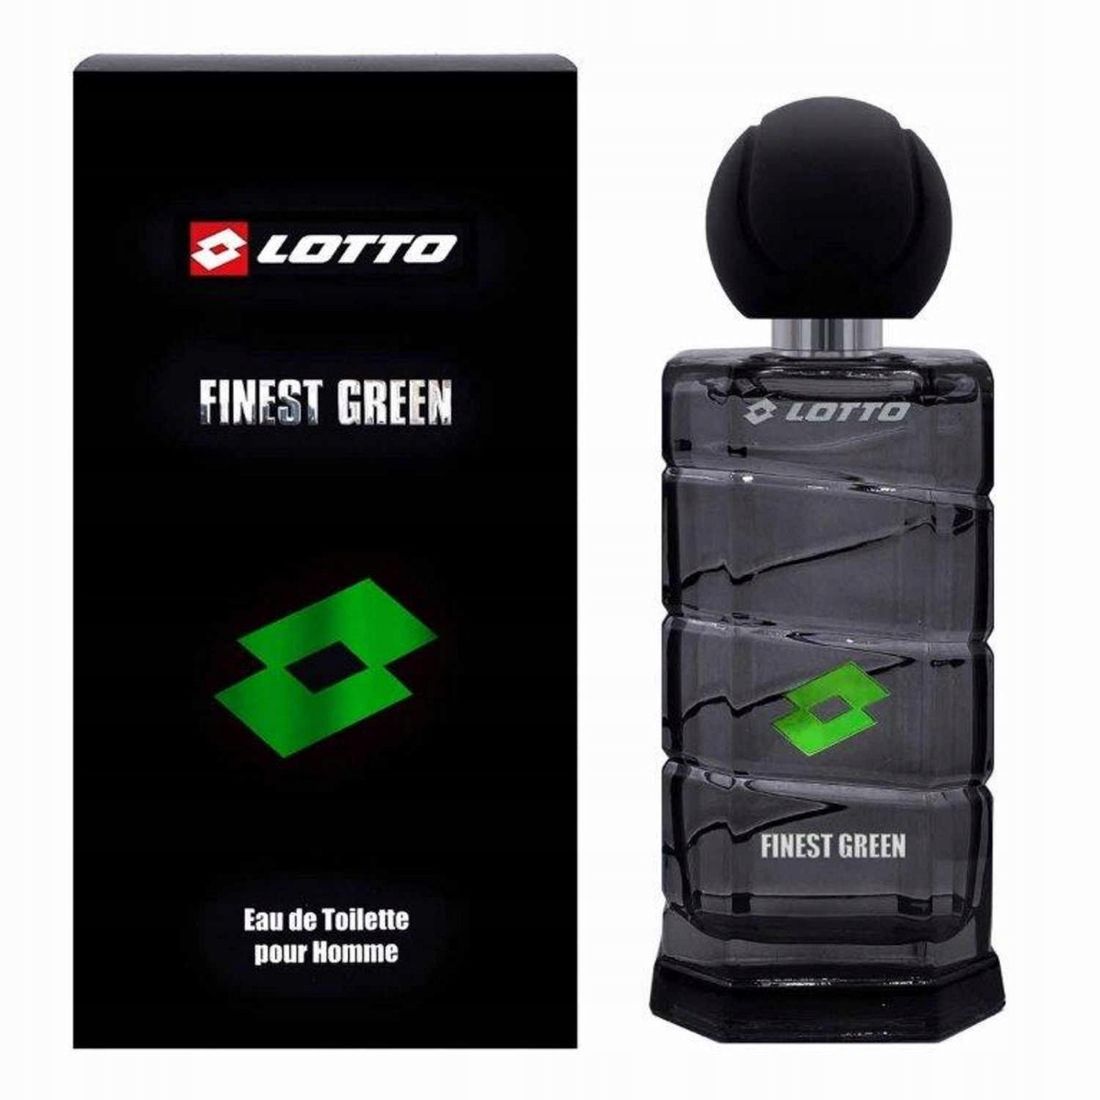 lotto green